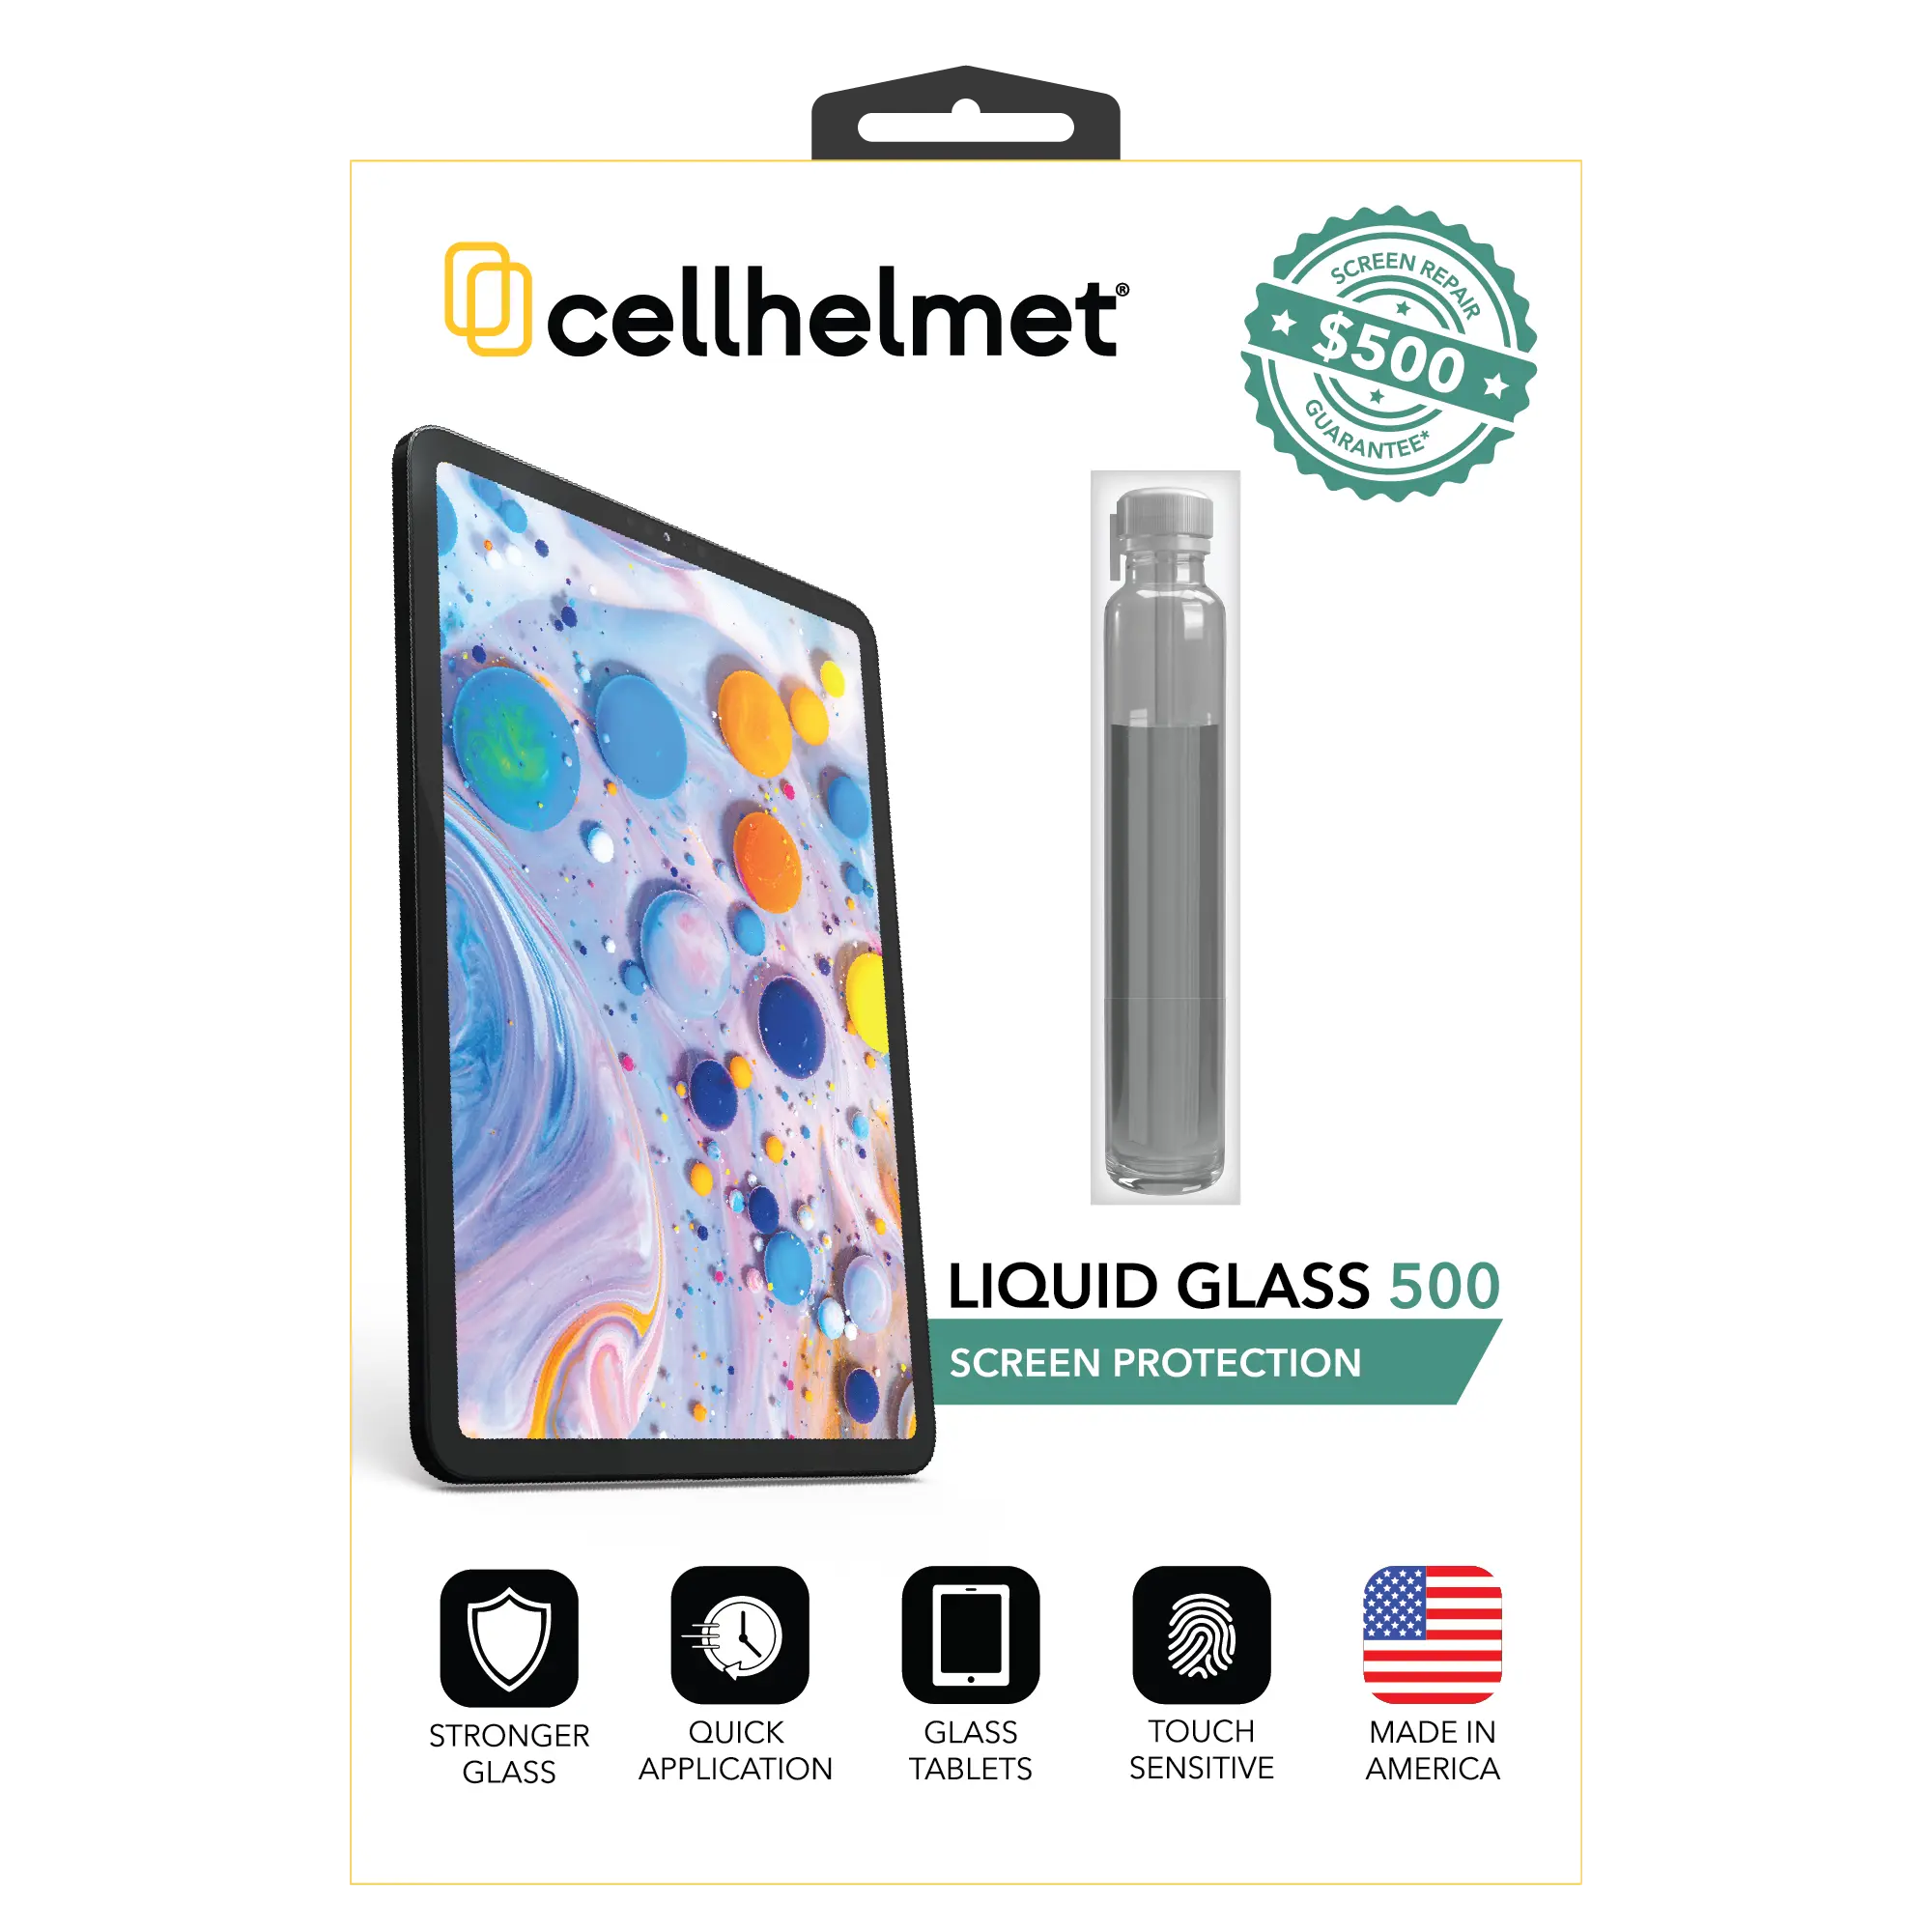 Liquid Glass Screen Protector Plus $500 Screen Repair Guarantee - Liquid Glass - Tablet - cellhelmet